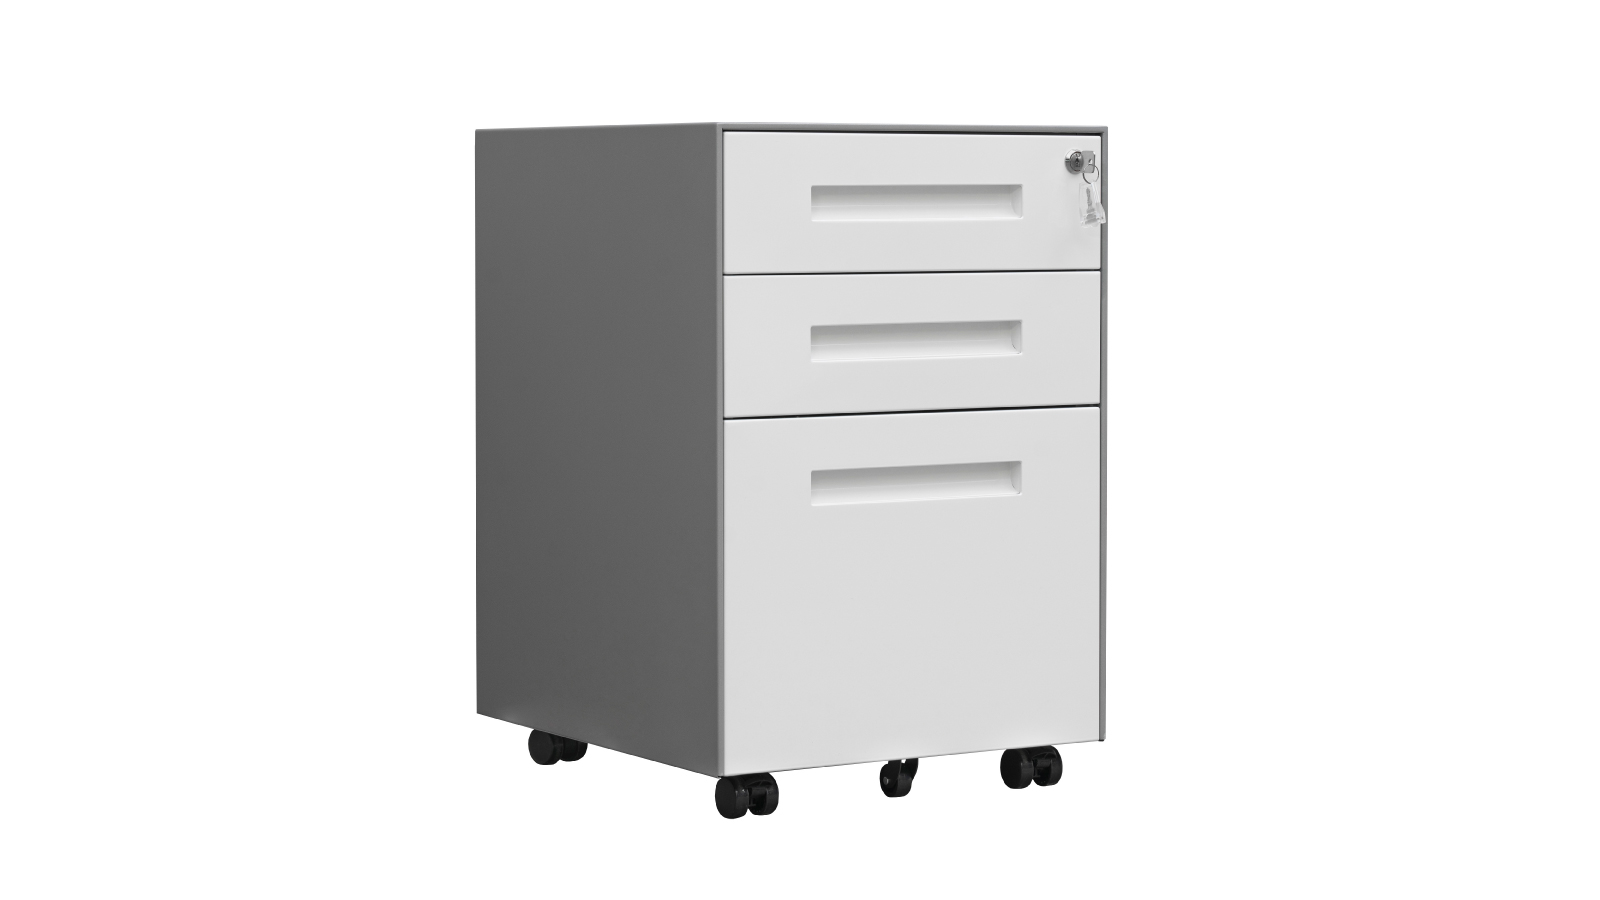 Logicfox Metal File Cabinet: 3 Drawers